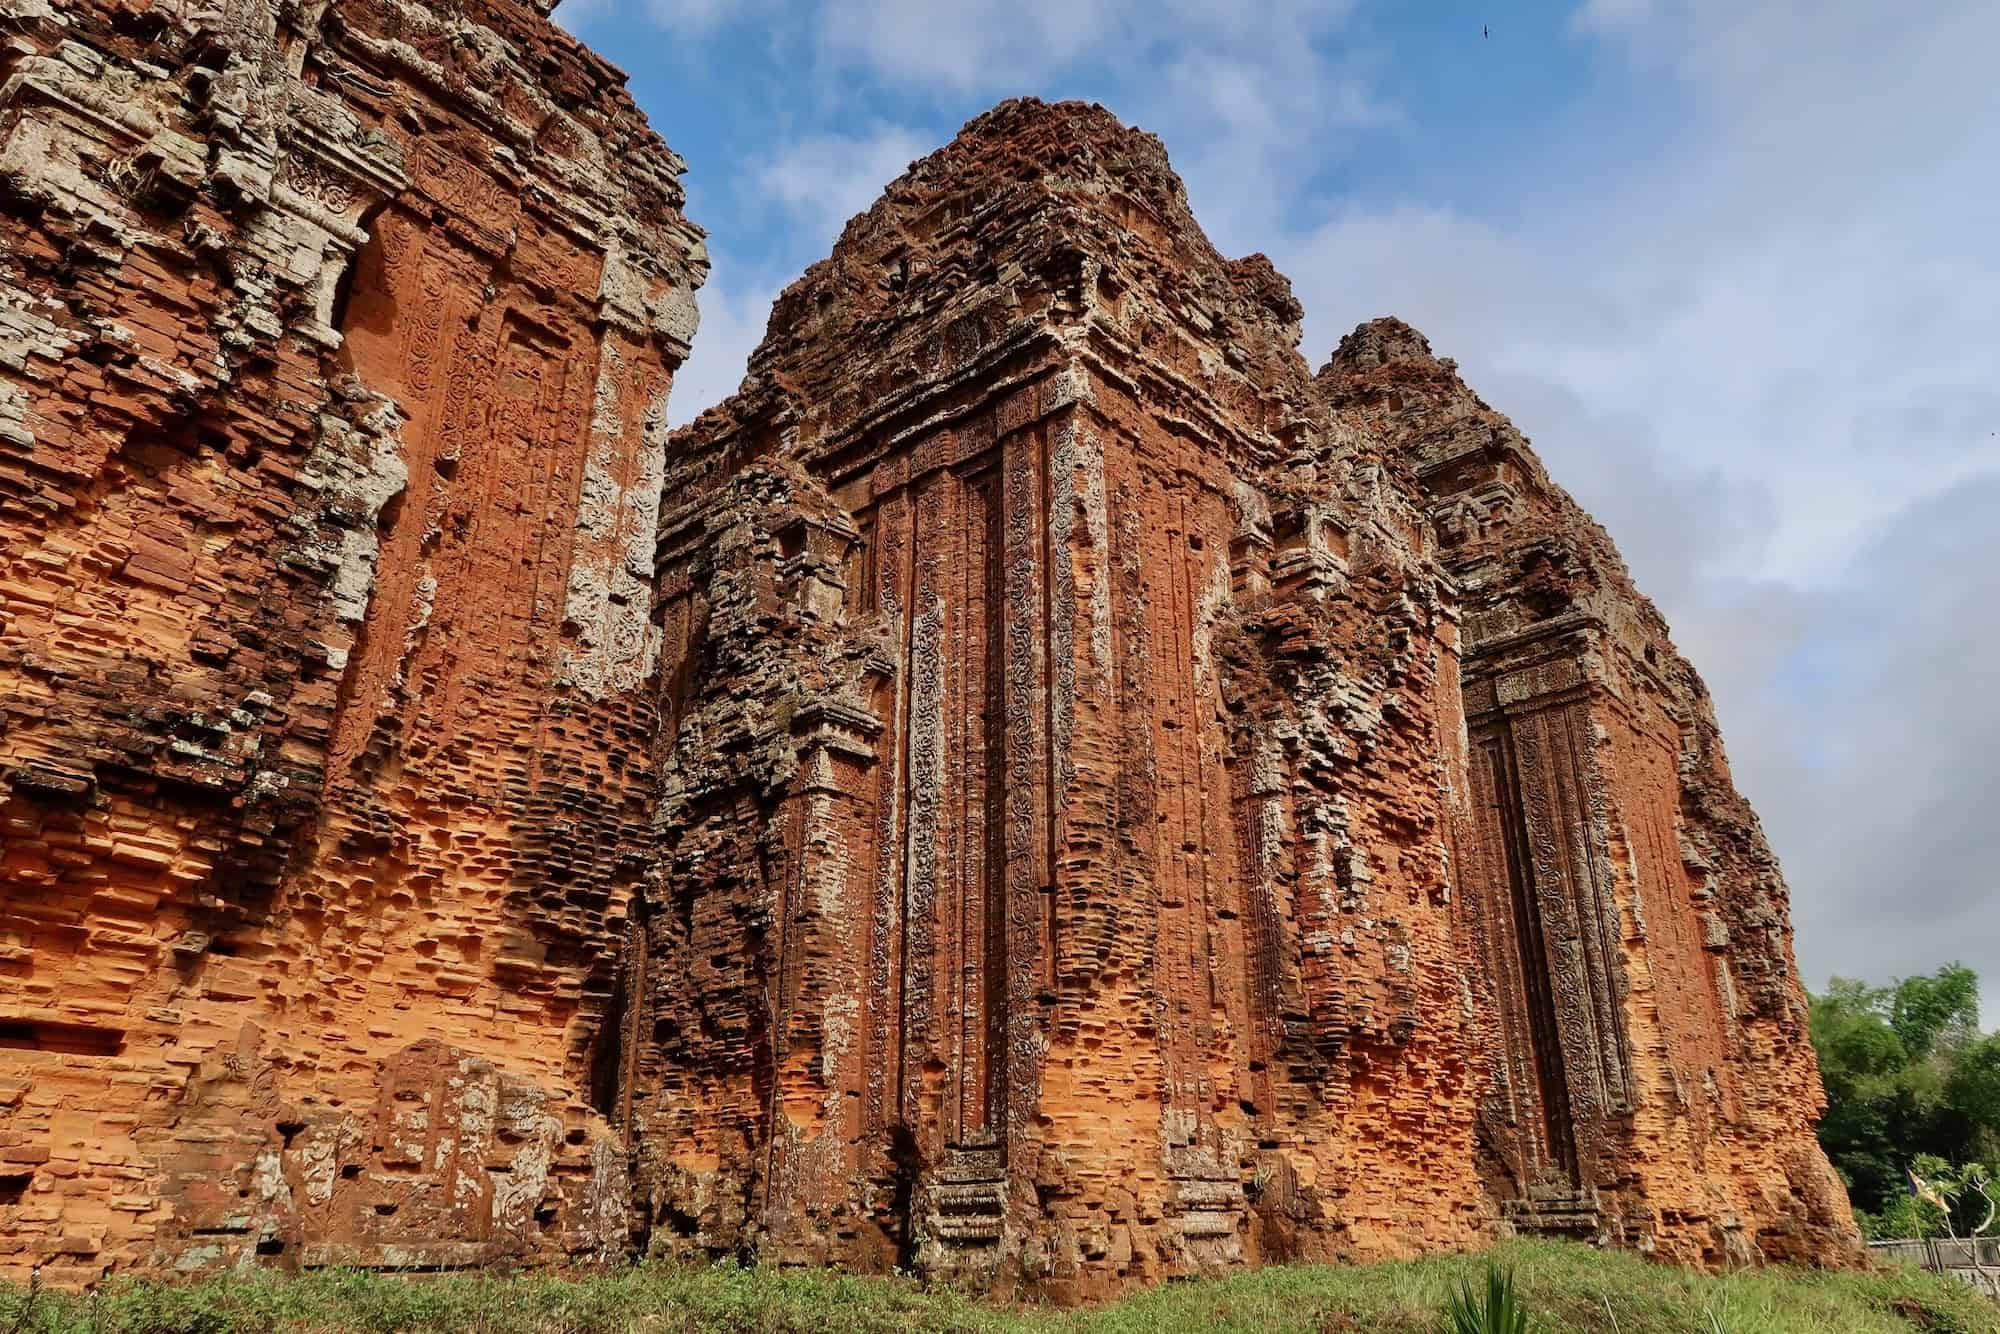 Tháp Khương Mỹ: Tam Kỳ’s Ancient Cham Tower Ruins